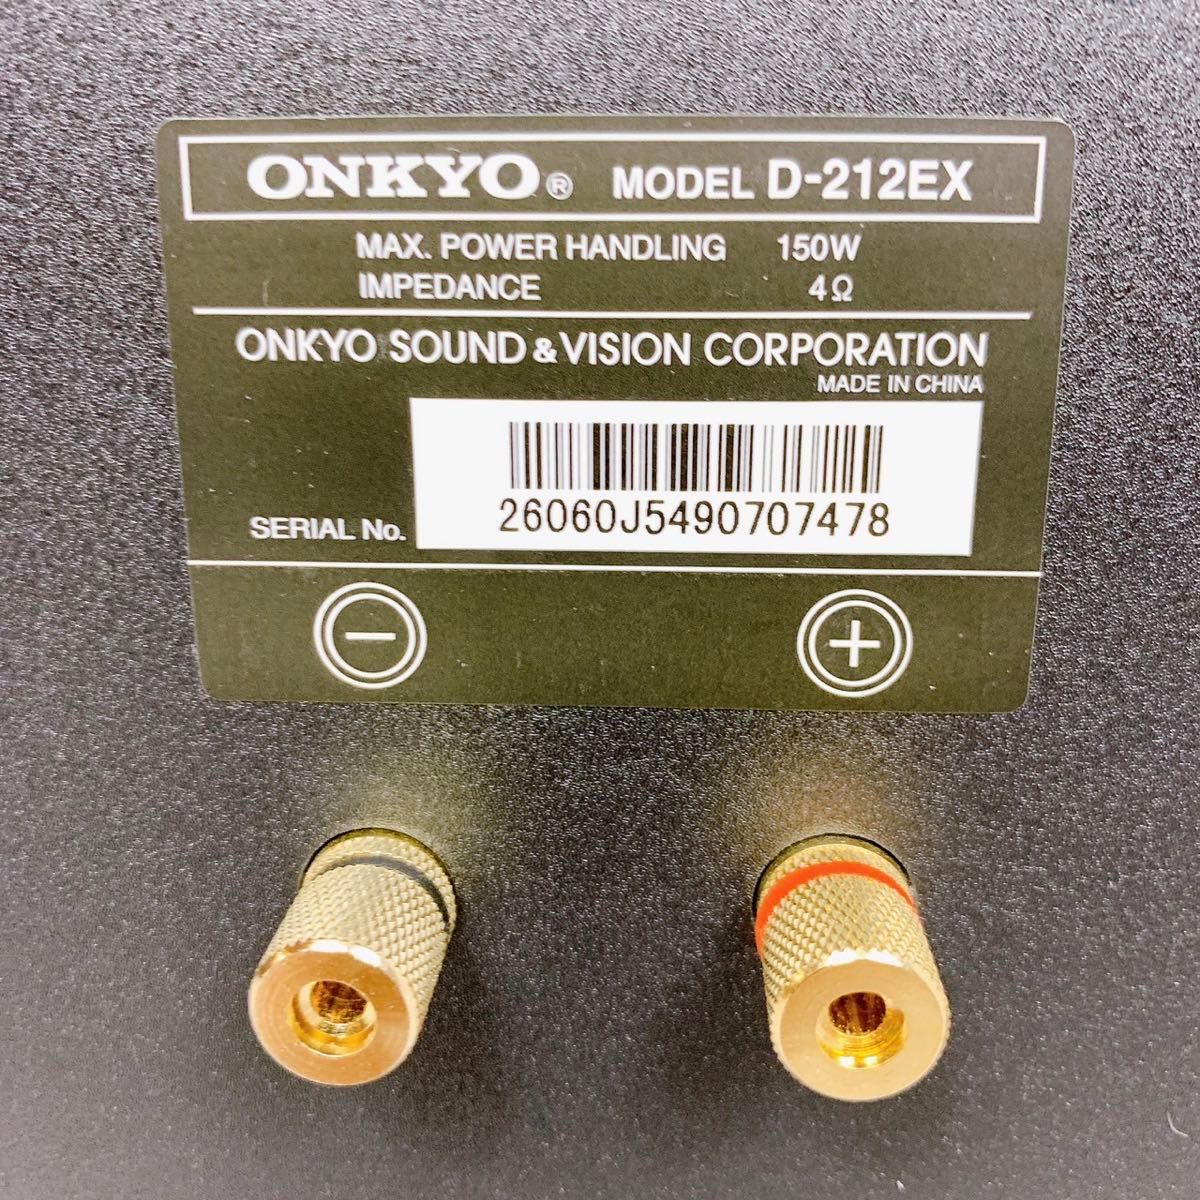 美品 ONKYO D-212EX スピーカーシステム ペア 2台 シリアル同番 オンキョー 高音質 ブックシェルフスピーカー 廃盤